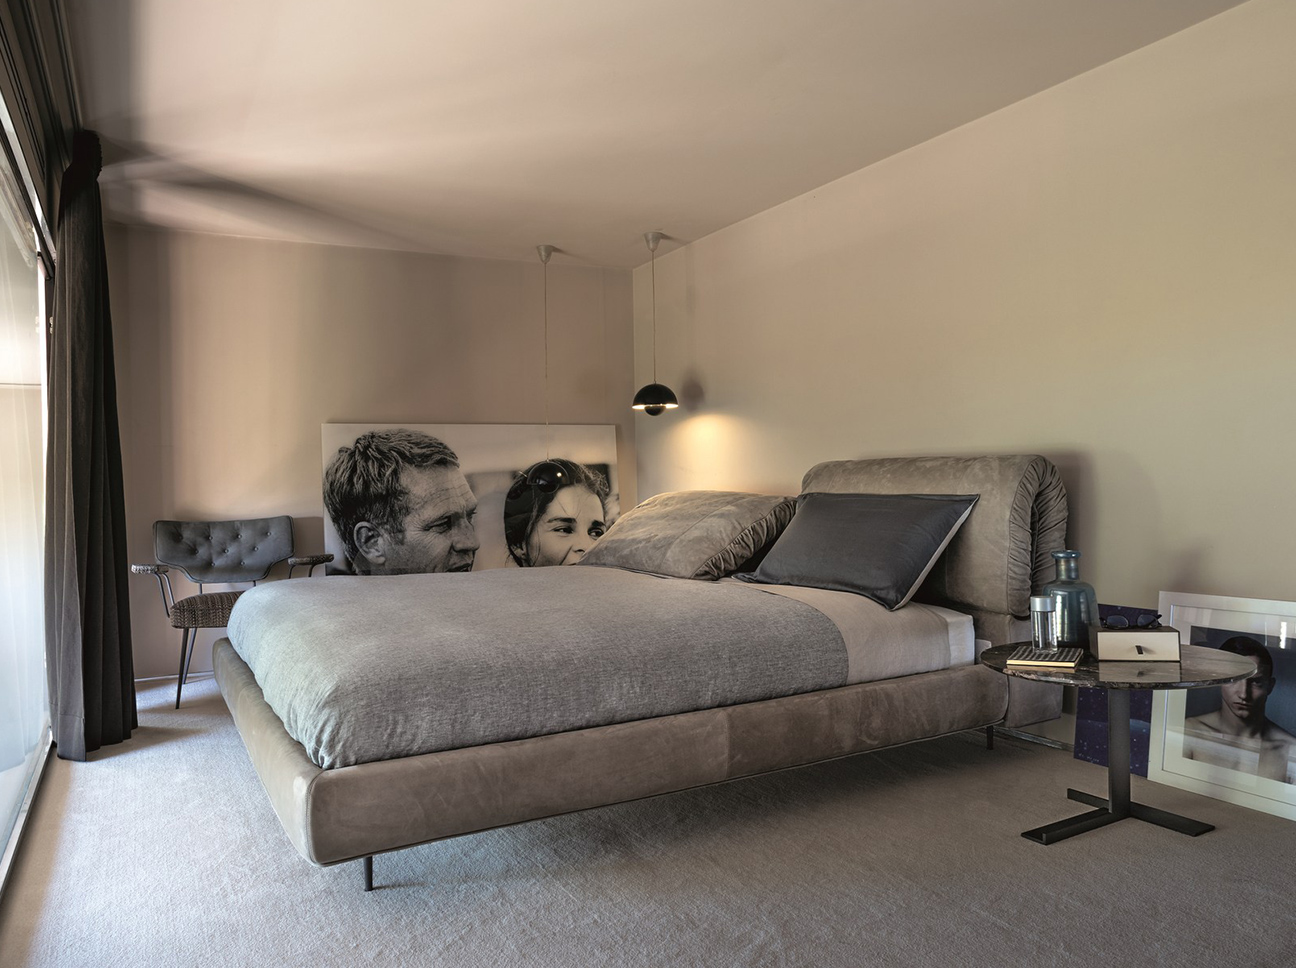 Купить Кровать CRAZY-DREAM Arketipo в магазине итальянской мебели Irice home